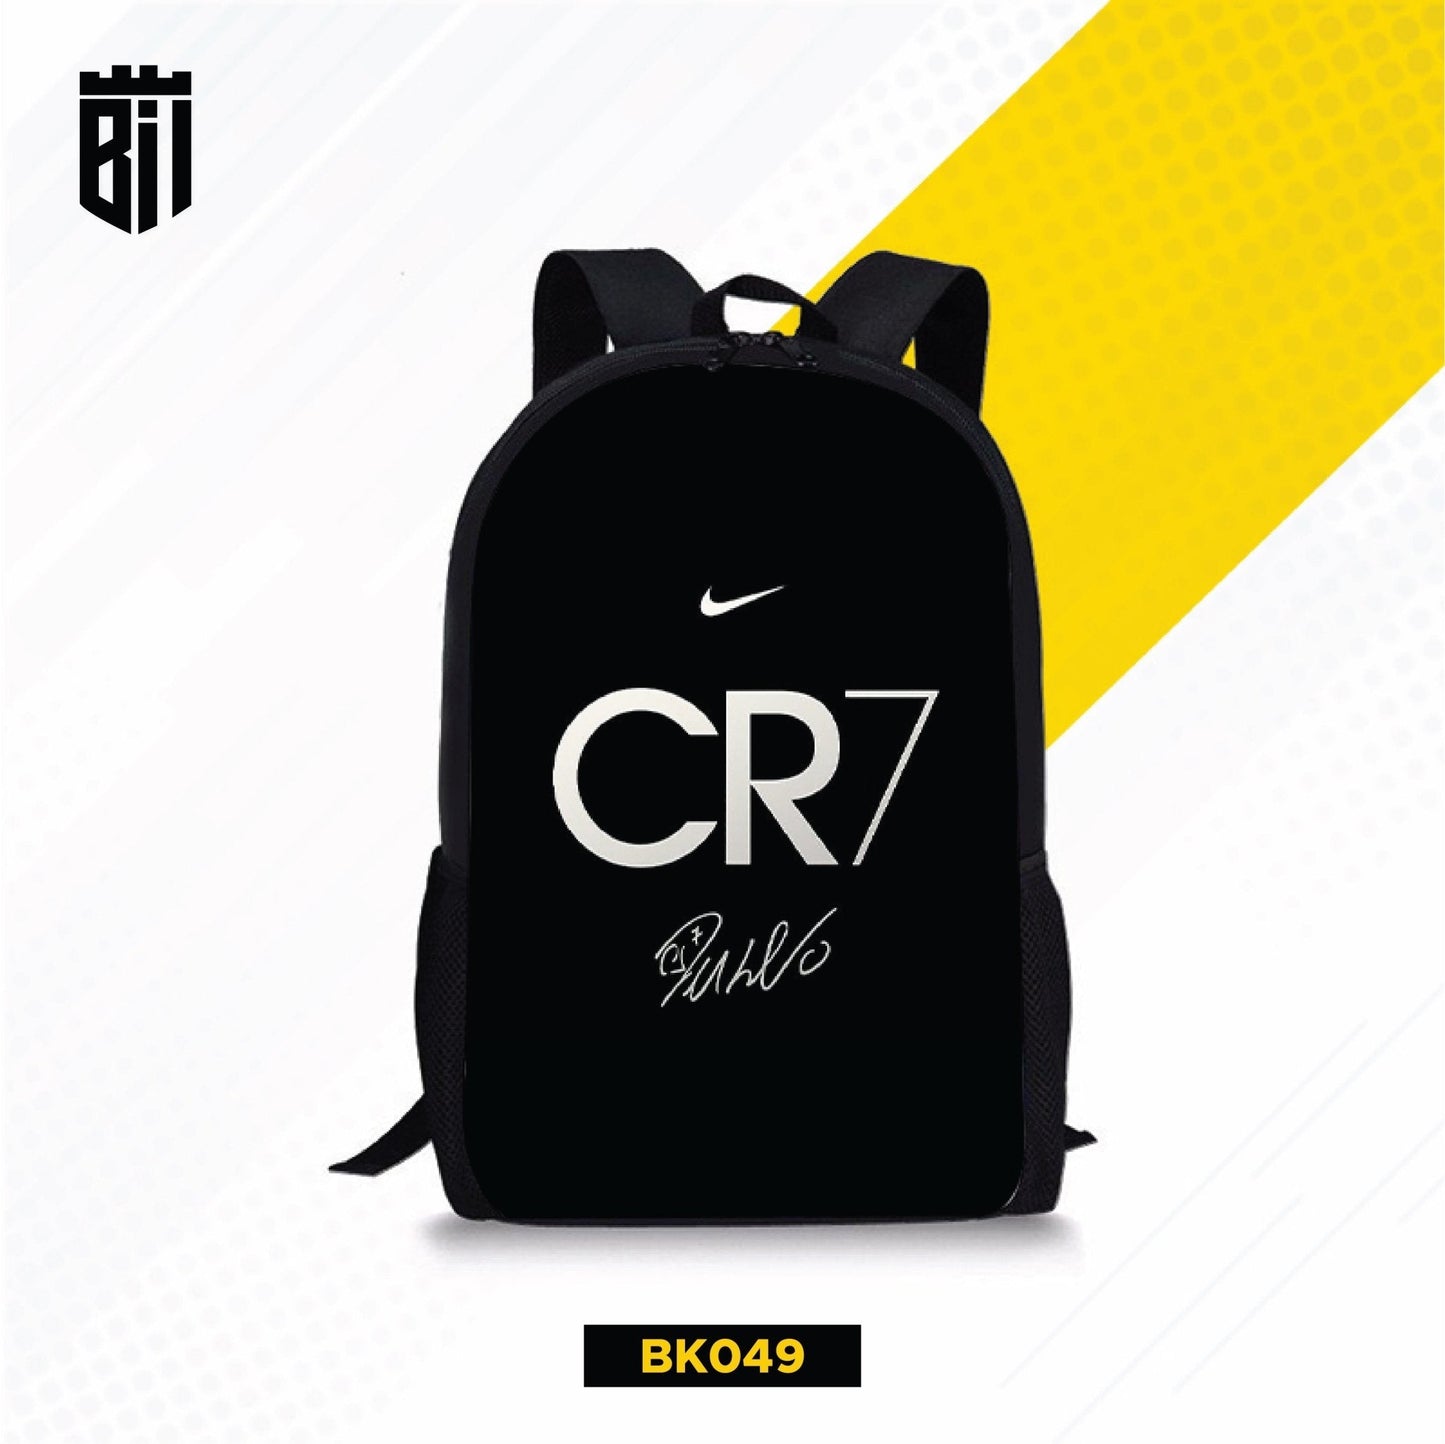 BK049 Black CR7 Backpack - BREACHIT